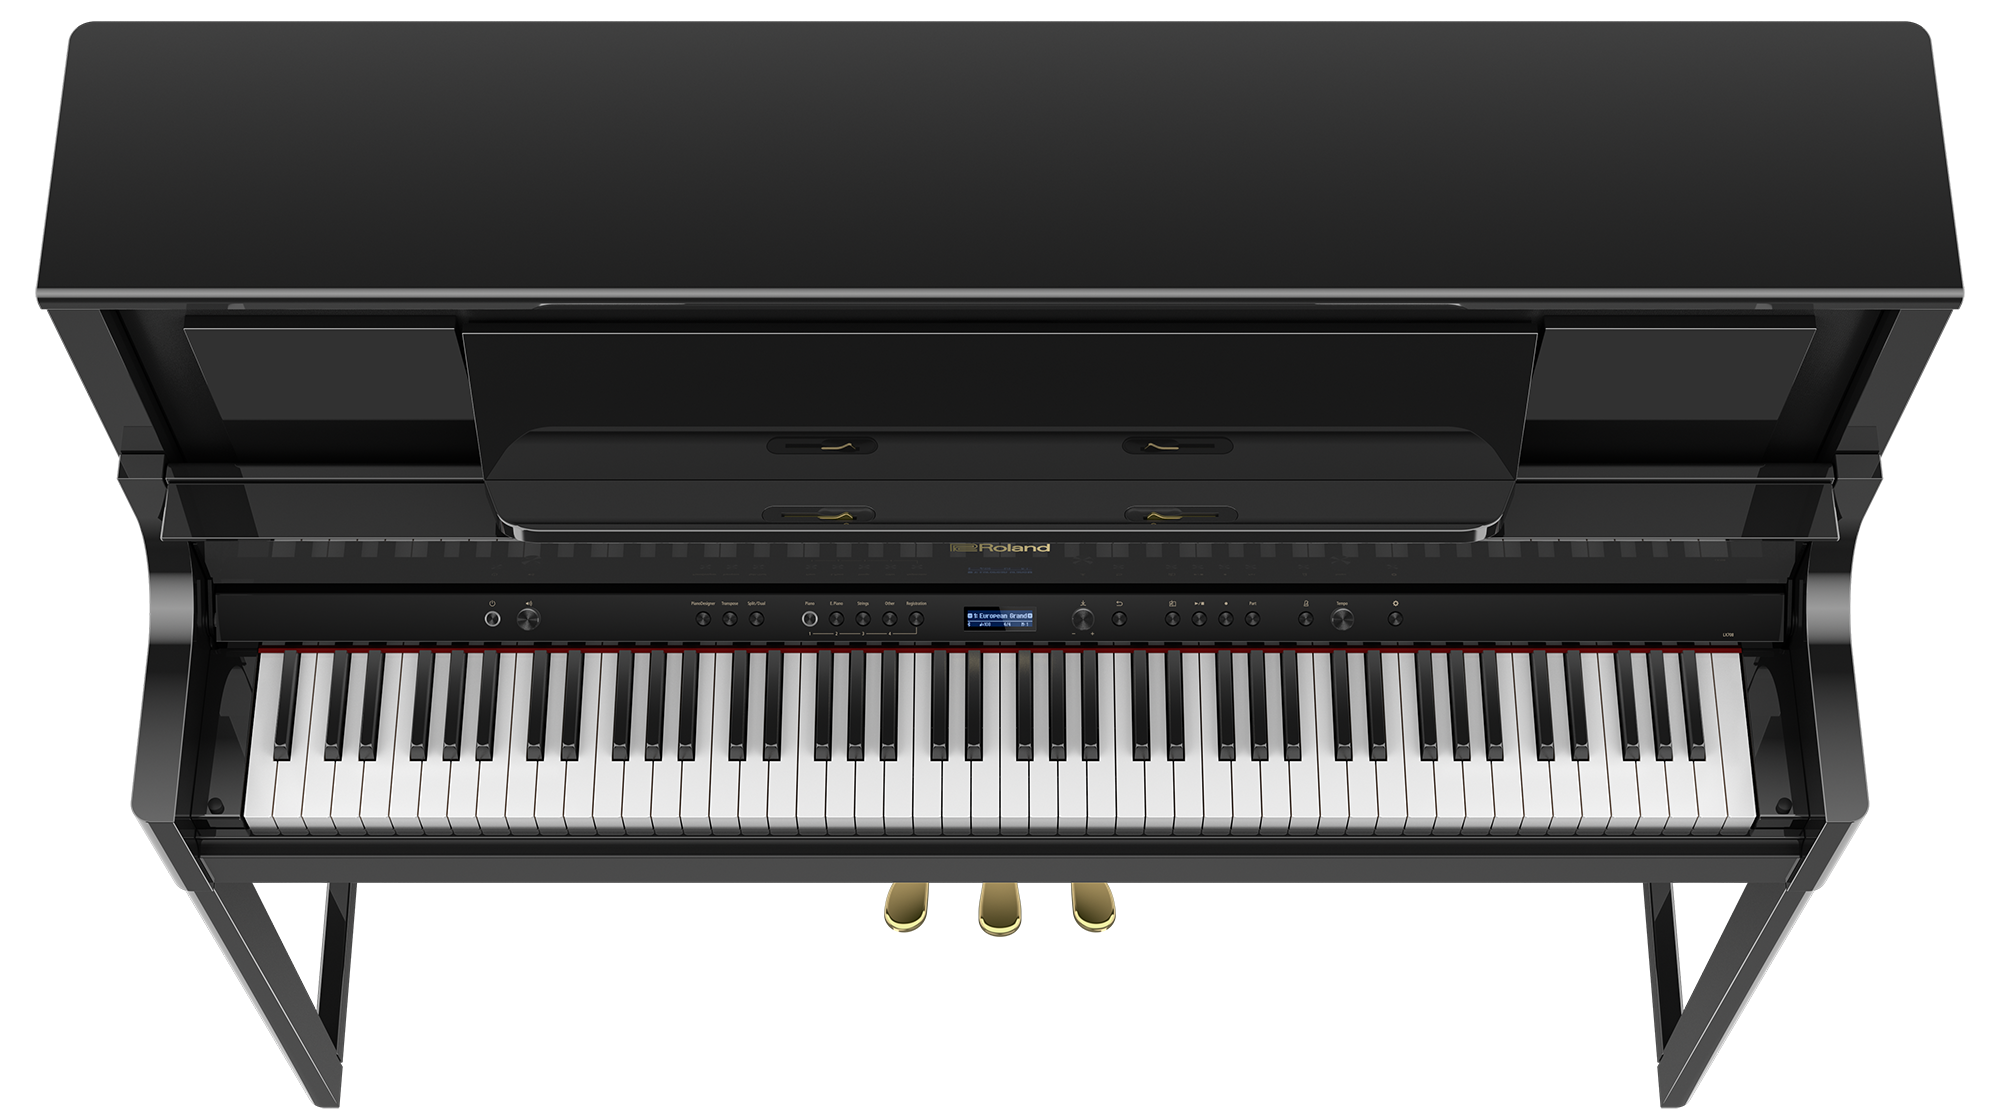 Roland ホームピアノの常識を覆すクオリティー Lx700シリーズ 新登場 19 12 24更新 Dj機材 Pcdj 電子ドラム ミュージックハウスフレンズ